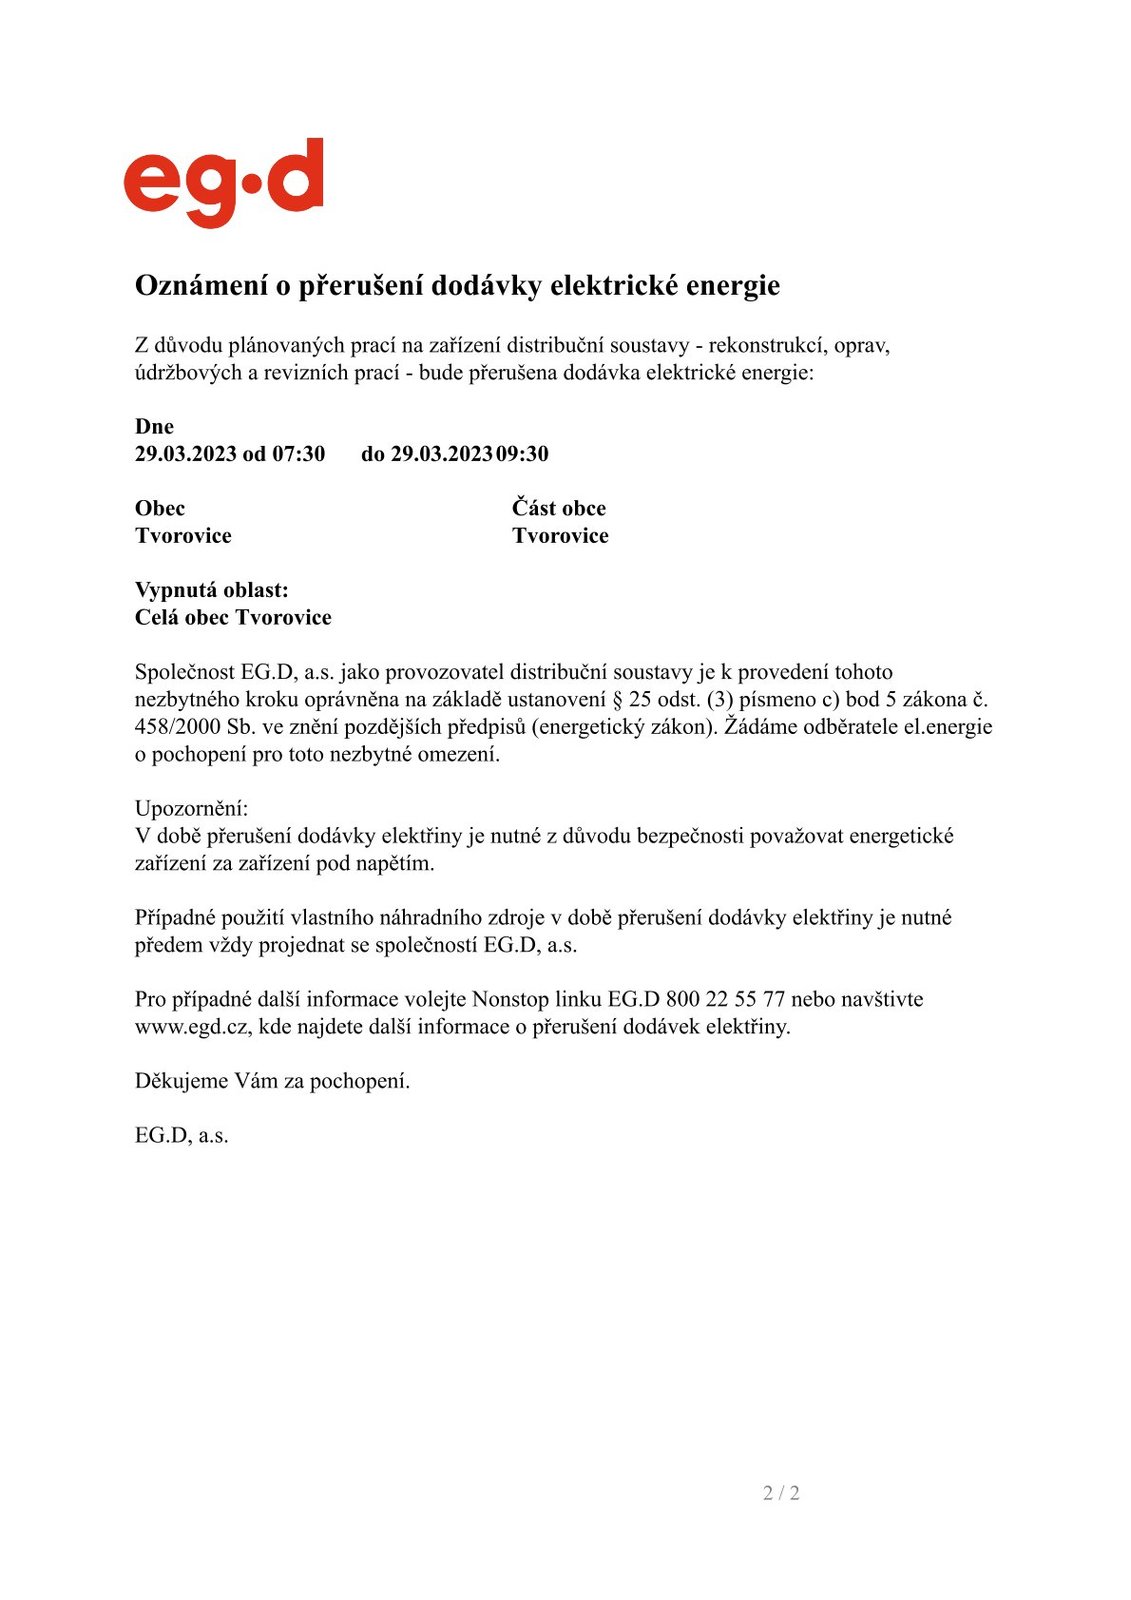 Oznámení o přerušení dodávky elektrické energie - Tvorovice 29.3.2023.jpg